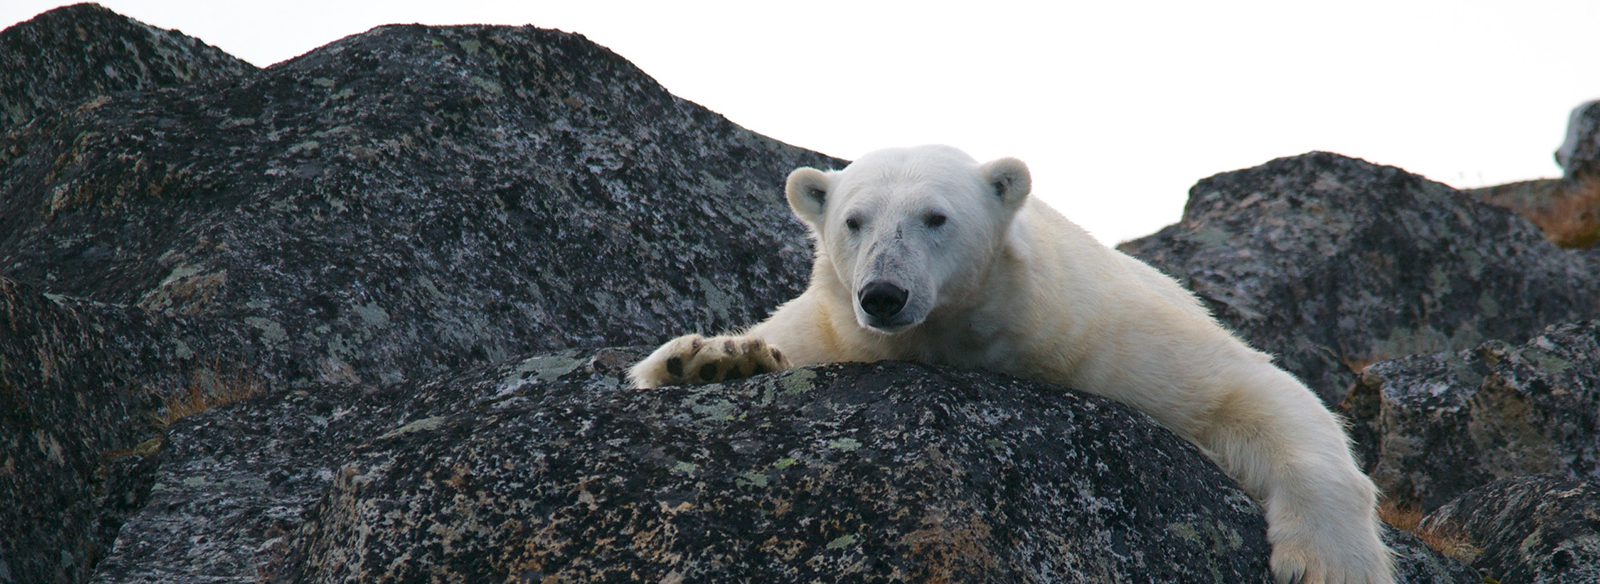 a polar bear sitting on a rock